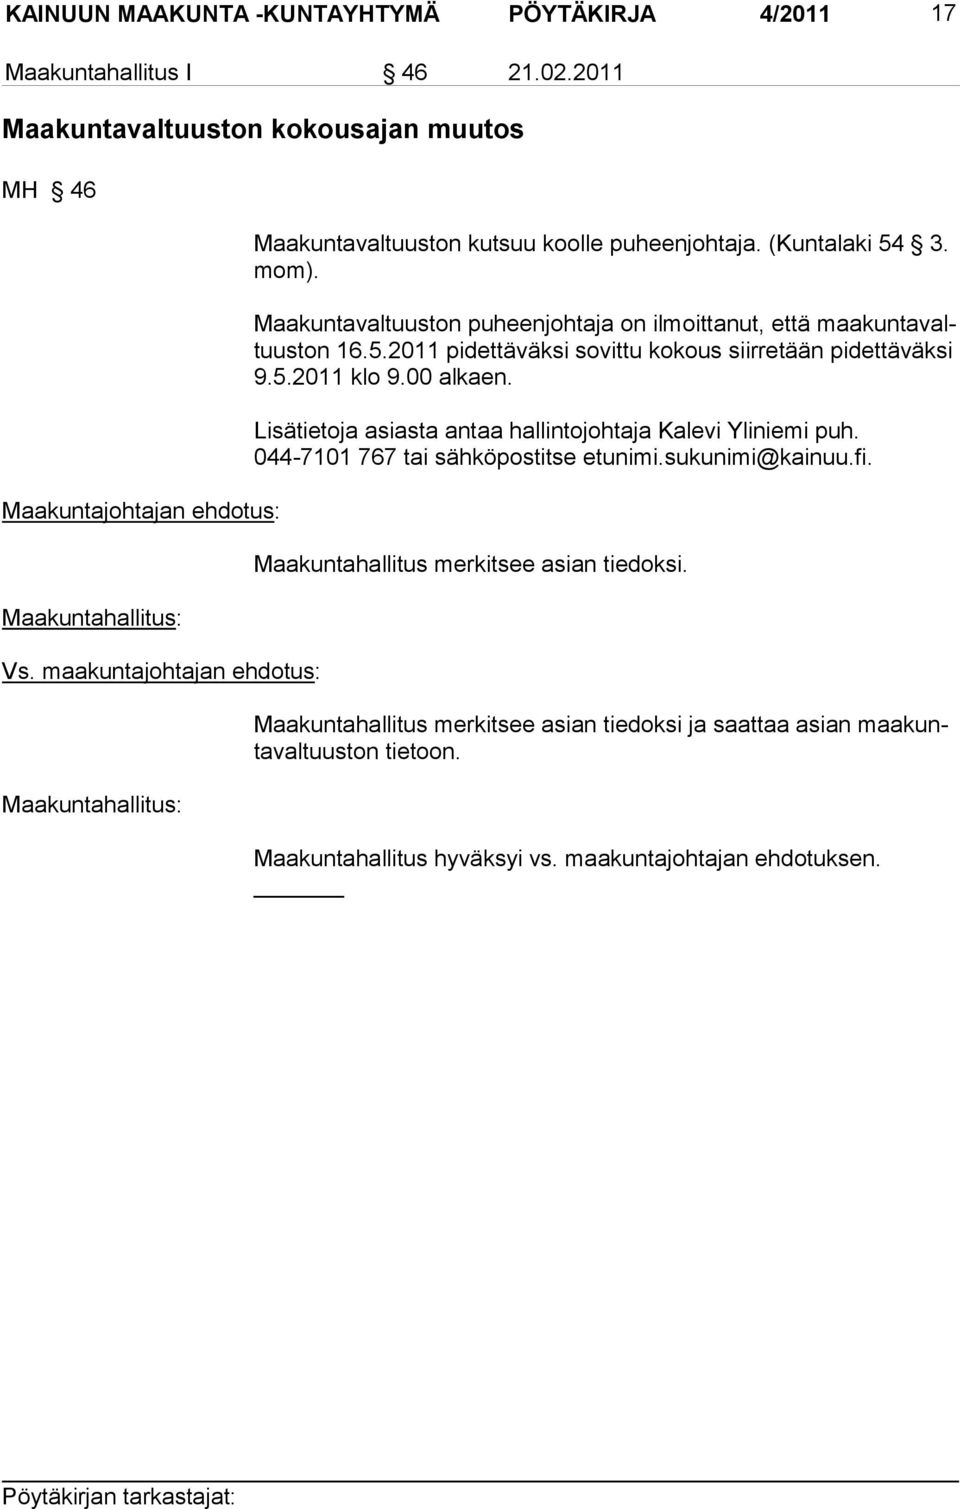 5.2011 klo 9.00 alkaen. Lisätietoja asiasta antaa hallintojohtaja Kalevi Yliniemi puh. 044-7101 767 tai sähköpostitse etunimi.sukunimi@kainuu.fi.